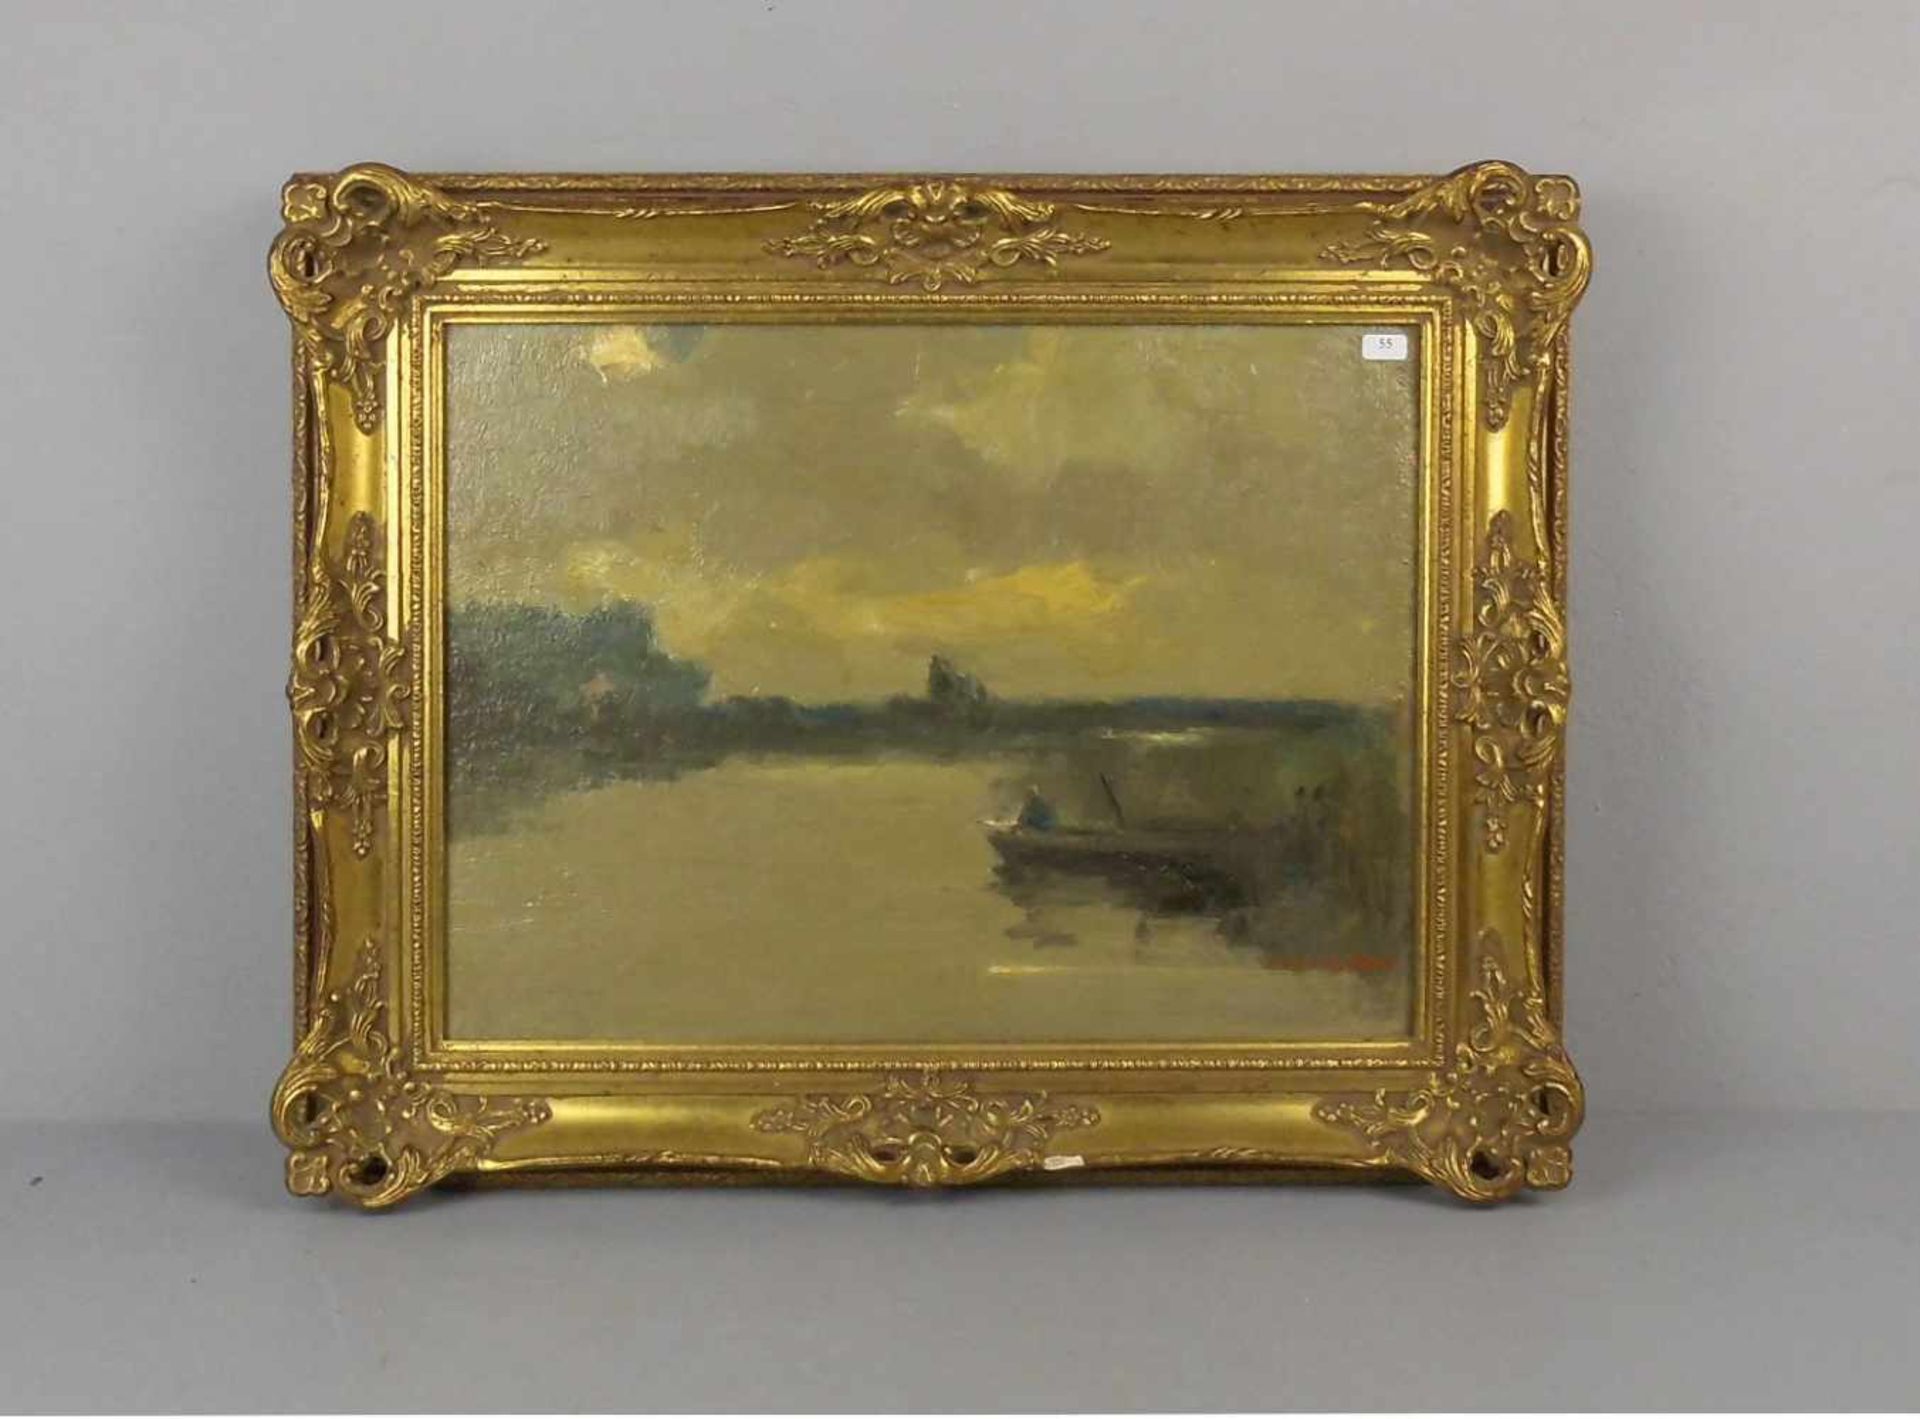 KEIZER, ANTHONY (Mepper / NL 1897-1961 ebd.), Gemälde / painting: "Flusslandschaft mit Kahn und